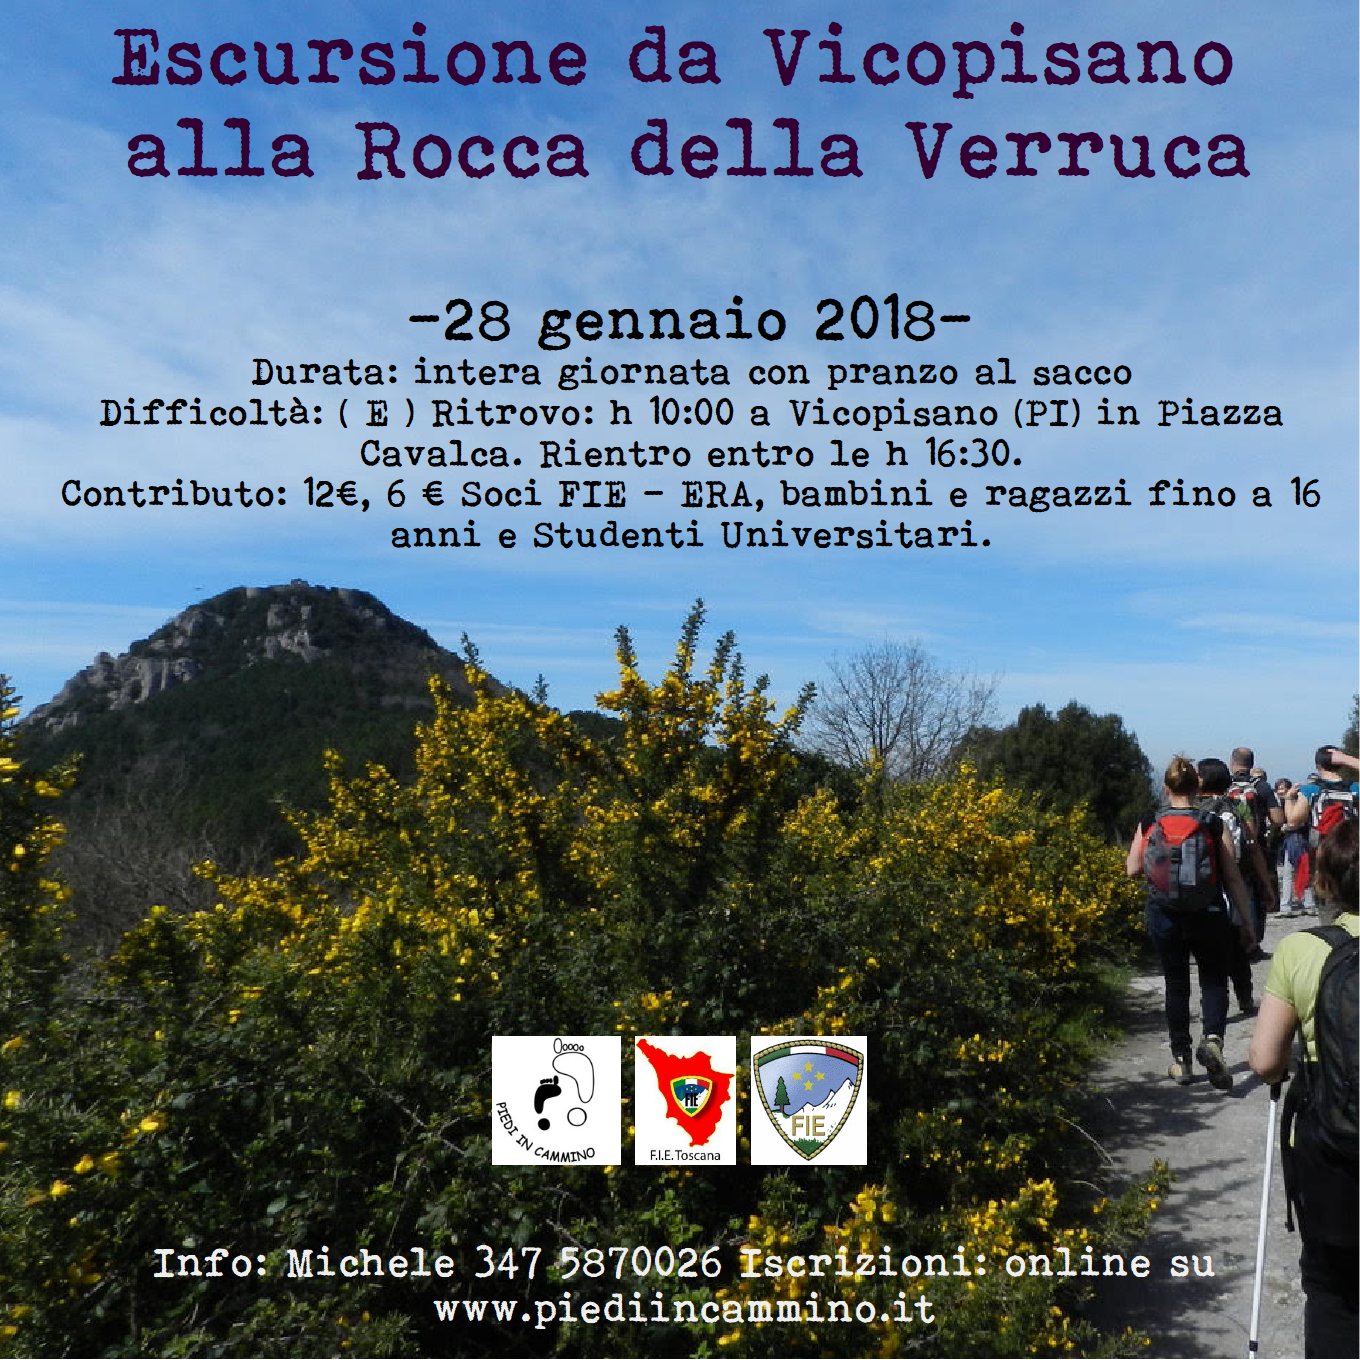 Escursione da Vicopisano alla Rocca della Verruca